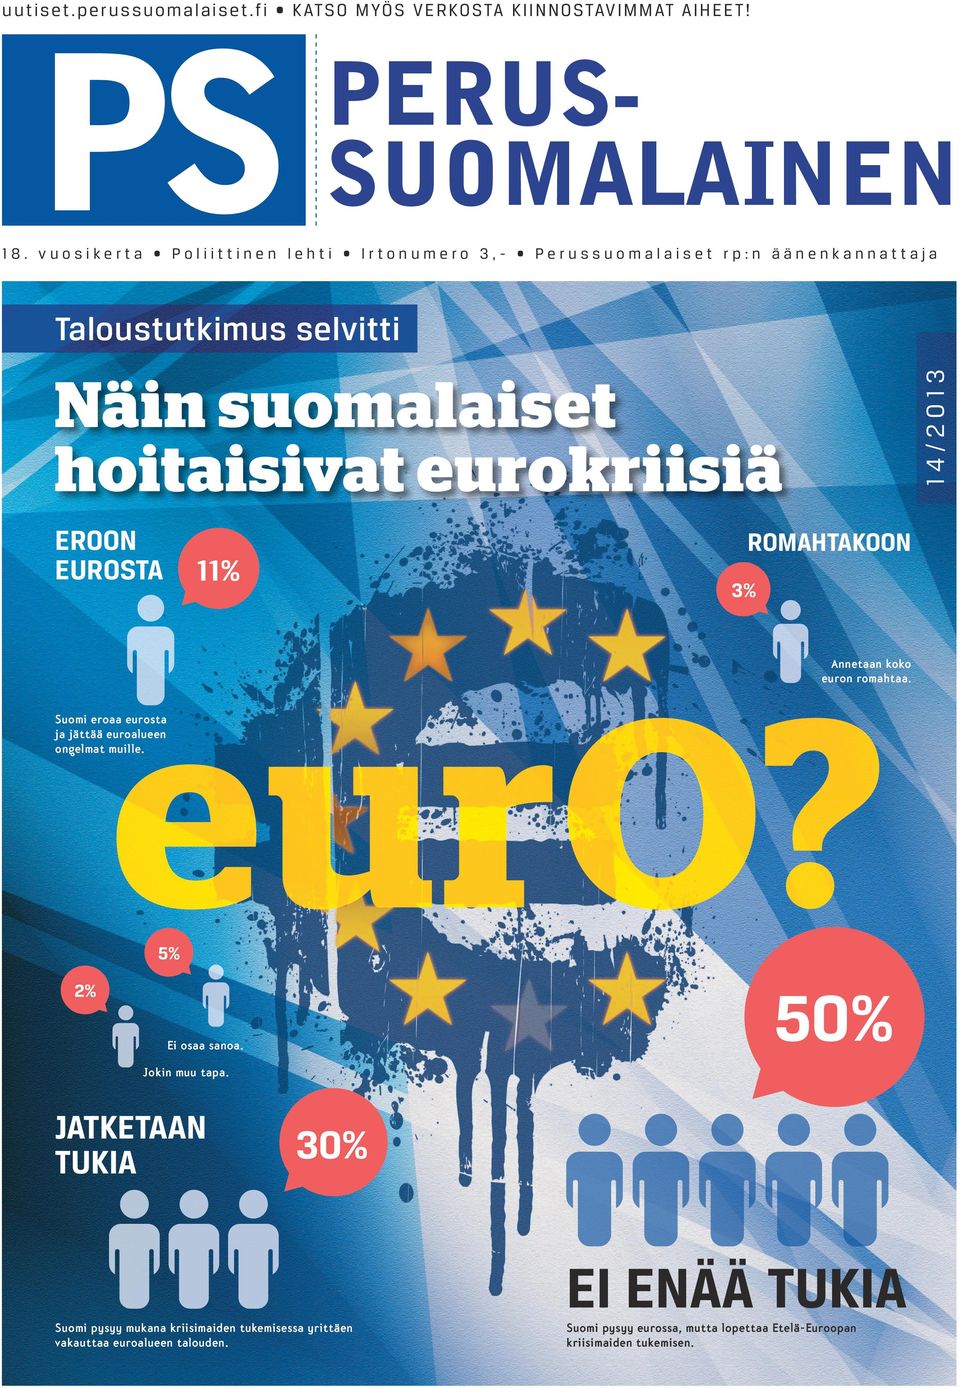 eurokriisiä ROMAHTAKOON 11% 3% Annetaan koko euron romahtaa. Suomi eroaa eurosta ja jättää euroalueen ongelmat muille. 5% 50% 2% Ei osaa sanoa. Jokin muu tapa.